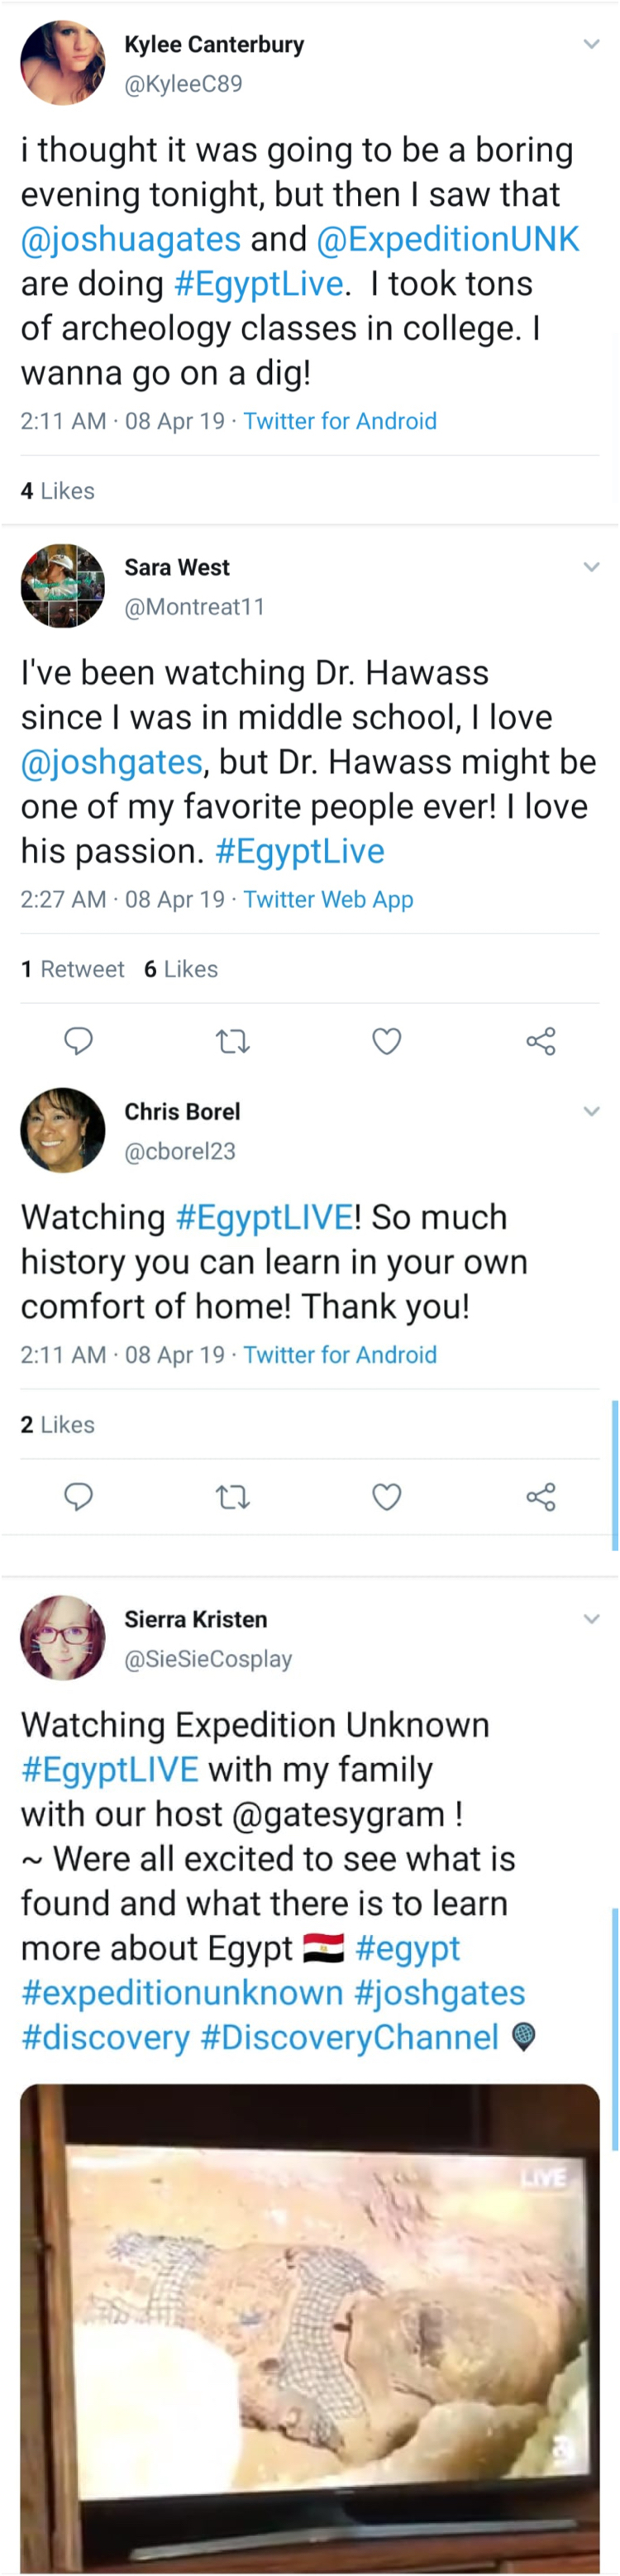 Forscher öffnen Sarkophag live im TV Twitter Kommentare